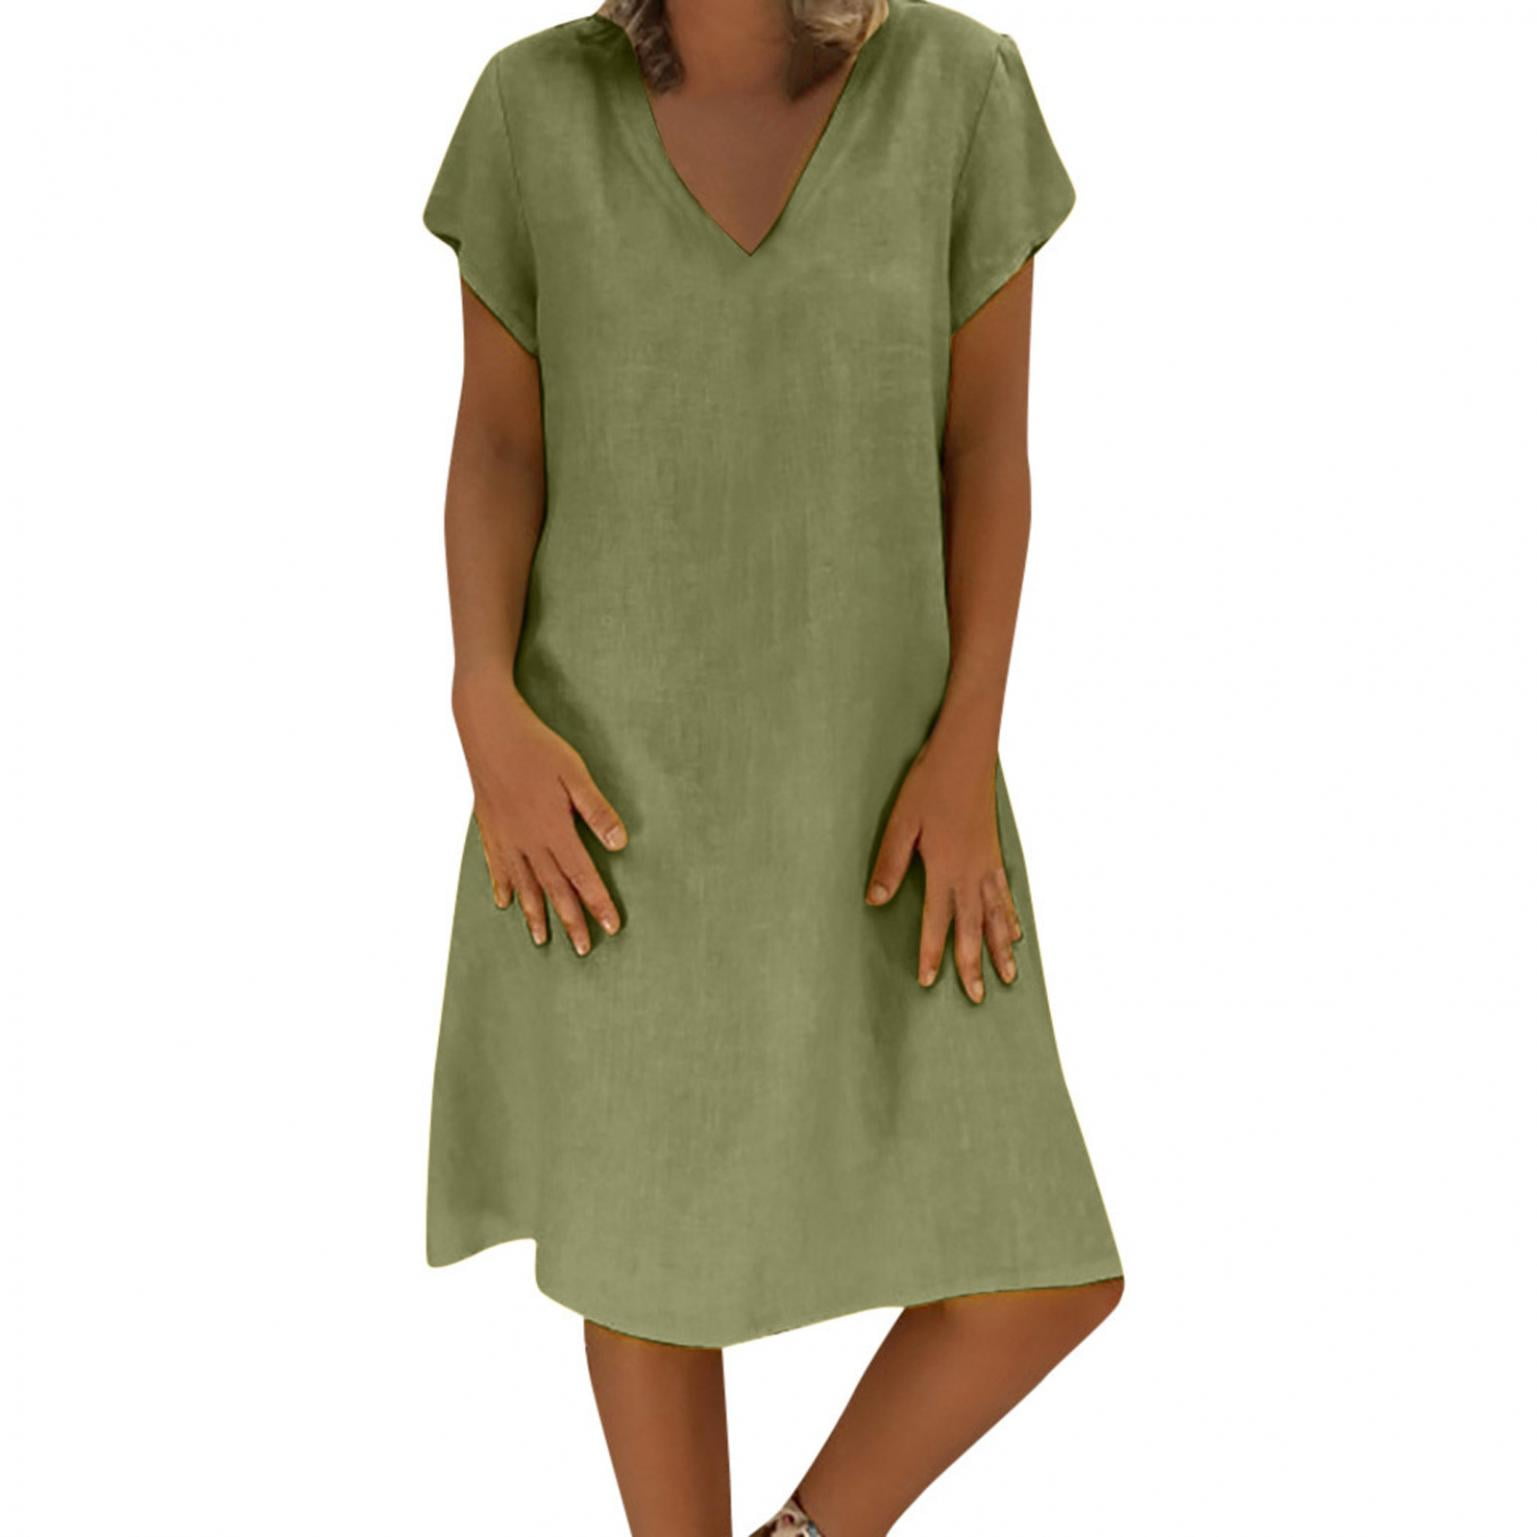 CHGBMOK Women Cotton Linen Summer Dresses Short Sleeve V Neck Sundress ...